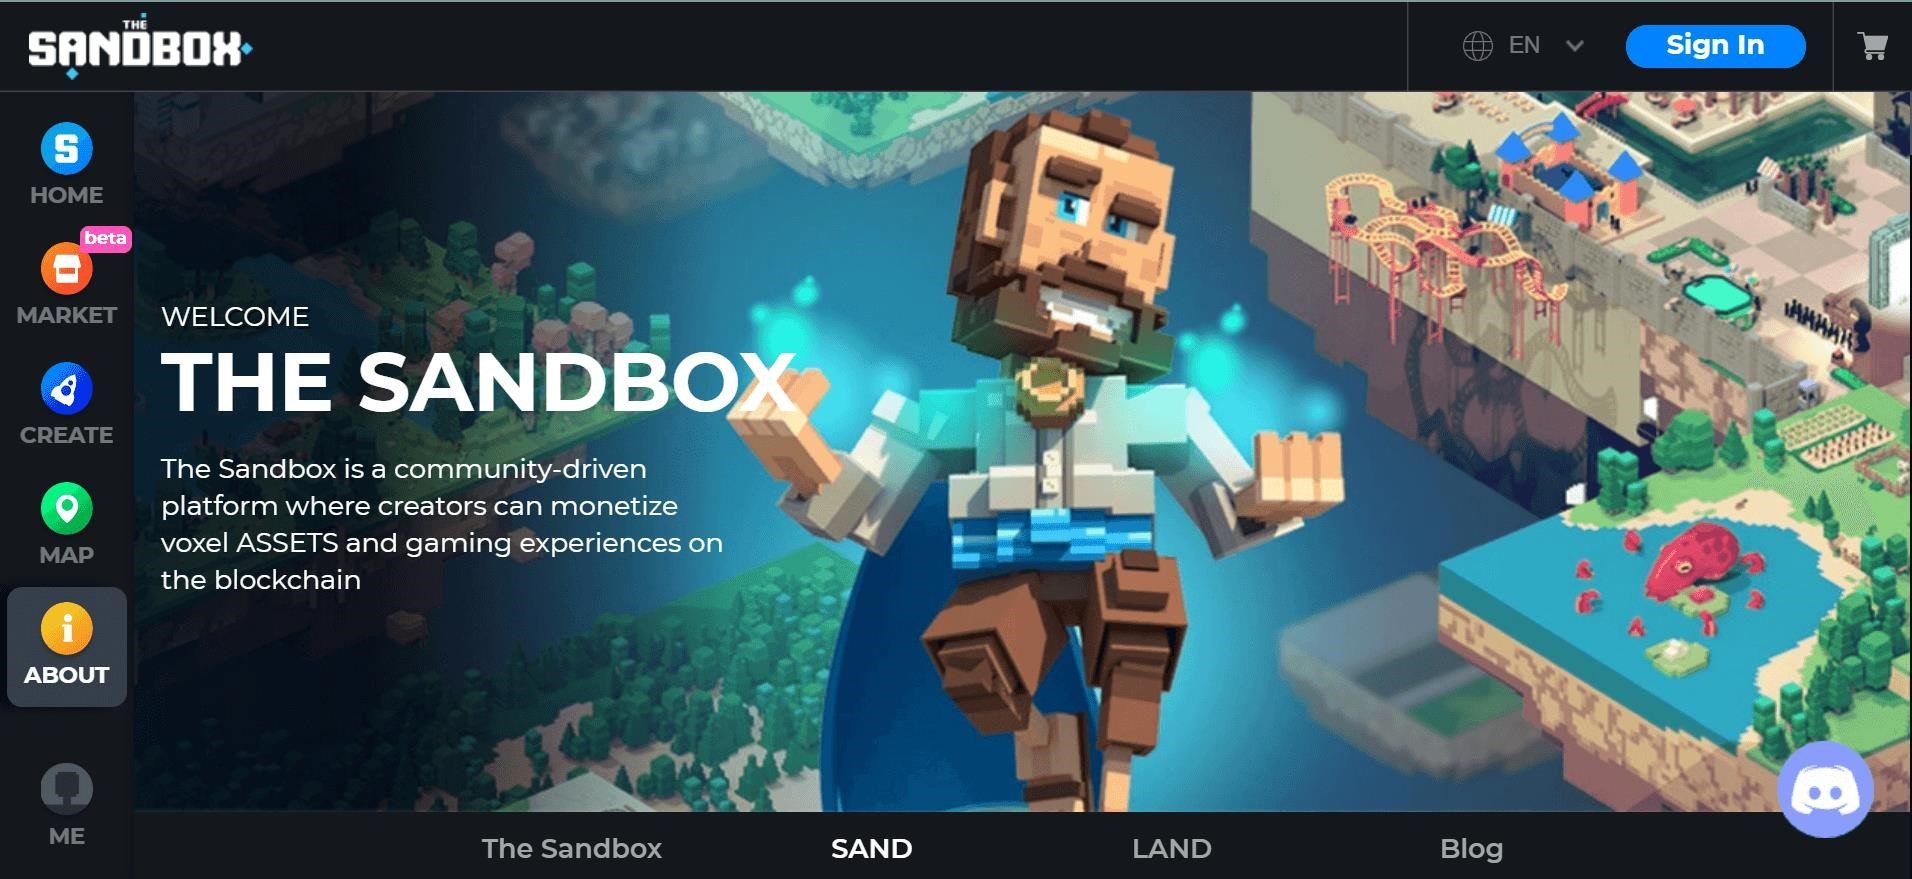 Giao diện website The Sandbox: www.sandbox.game được thiết kế với một cách trình bày hấp dẫn và dễ sử dụng, mang lại trải nghiệm tuyệt vời cho người dùng.